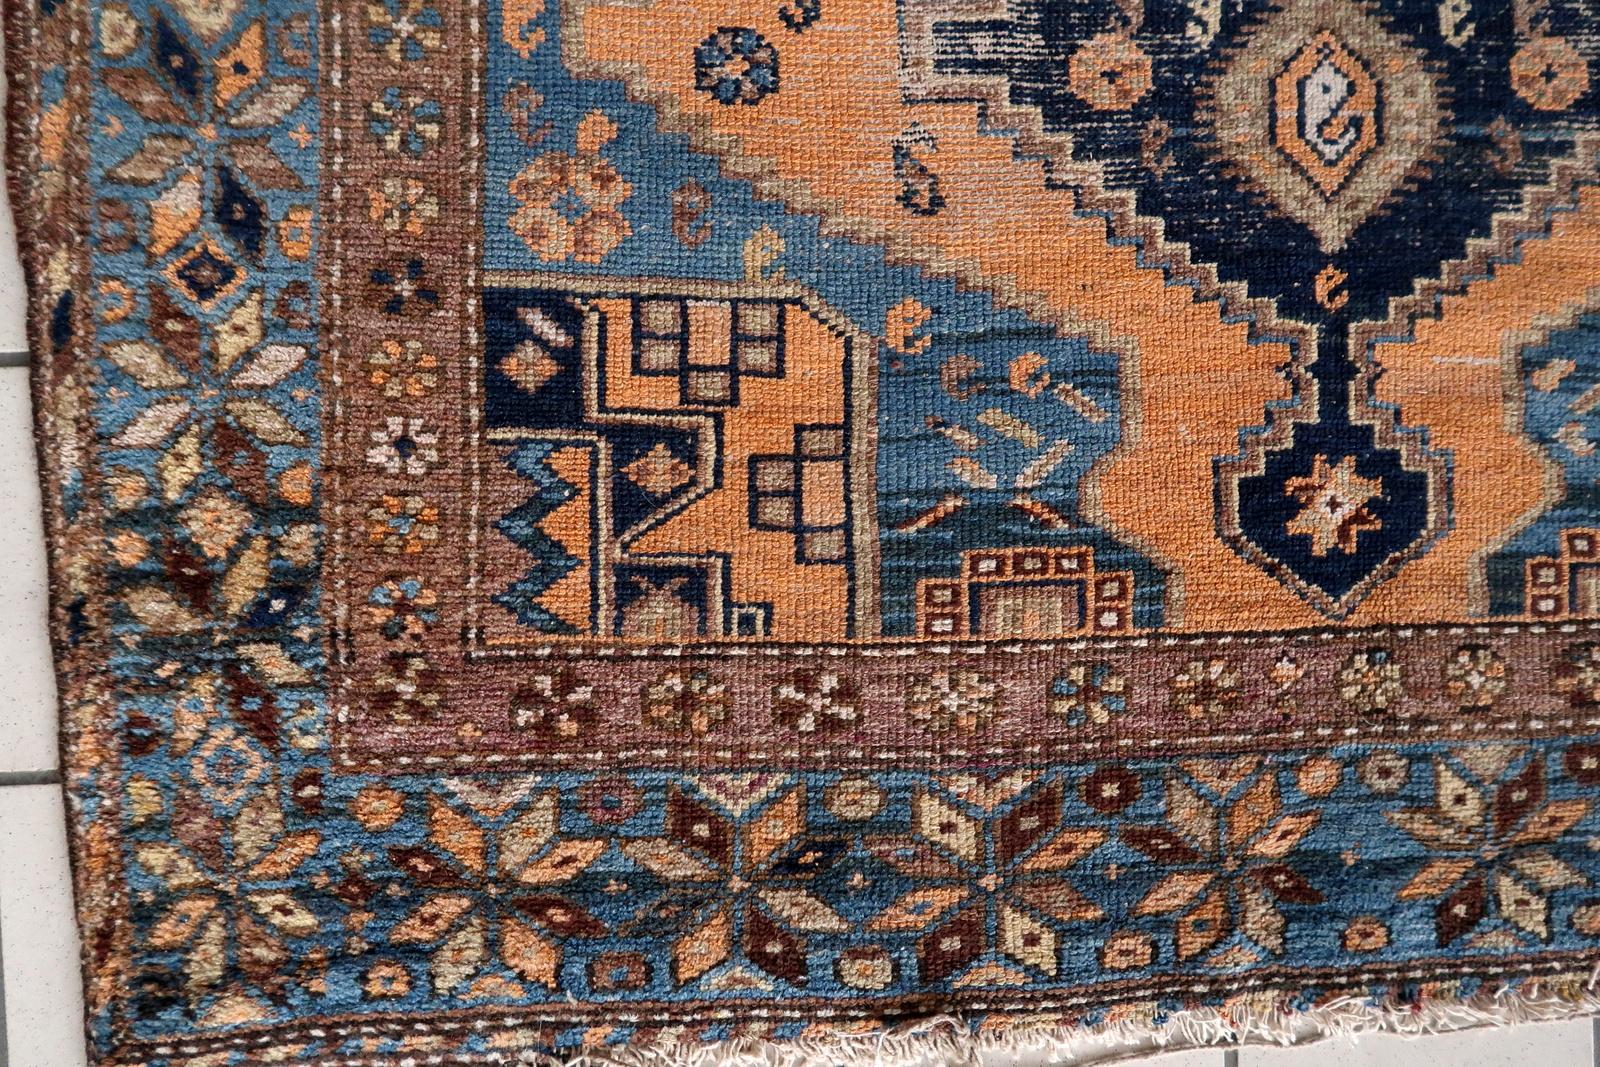 Handgefertigter antiker kaukasischer Schirwan-Teppich:

Design und Ästhetik:
Dieser Teppich stammt aus der Zeit um 1900, ein Beweis für seine dauerhafte Qualität und historische Bedeutung.
Mit den Maßen 4,1' x 6,2' ist es ein kompaktes und dennoch